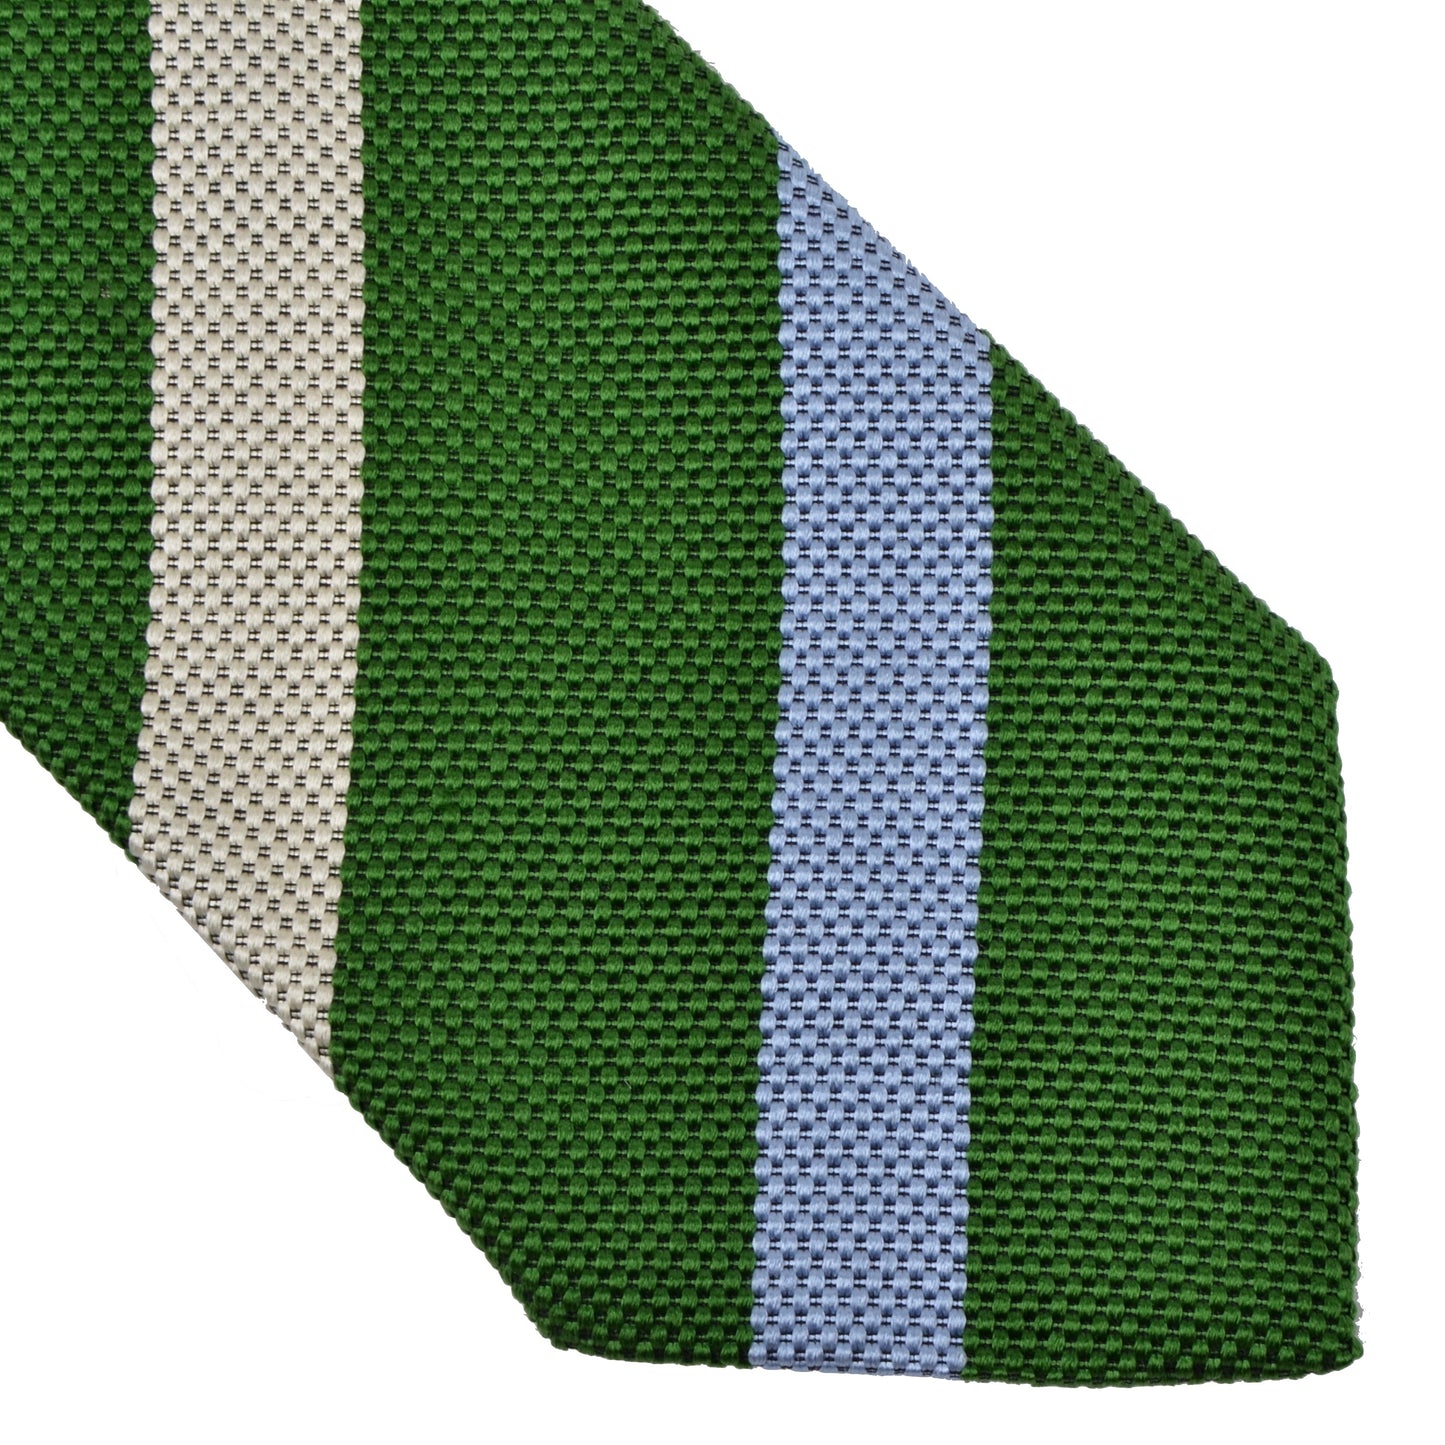 Kleidermanufaktur Habsburg Striped Silk Tie - Blue, Green, Tan